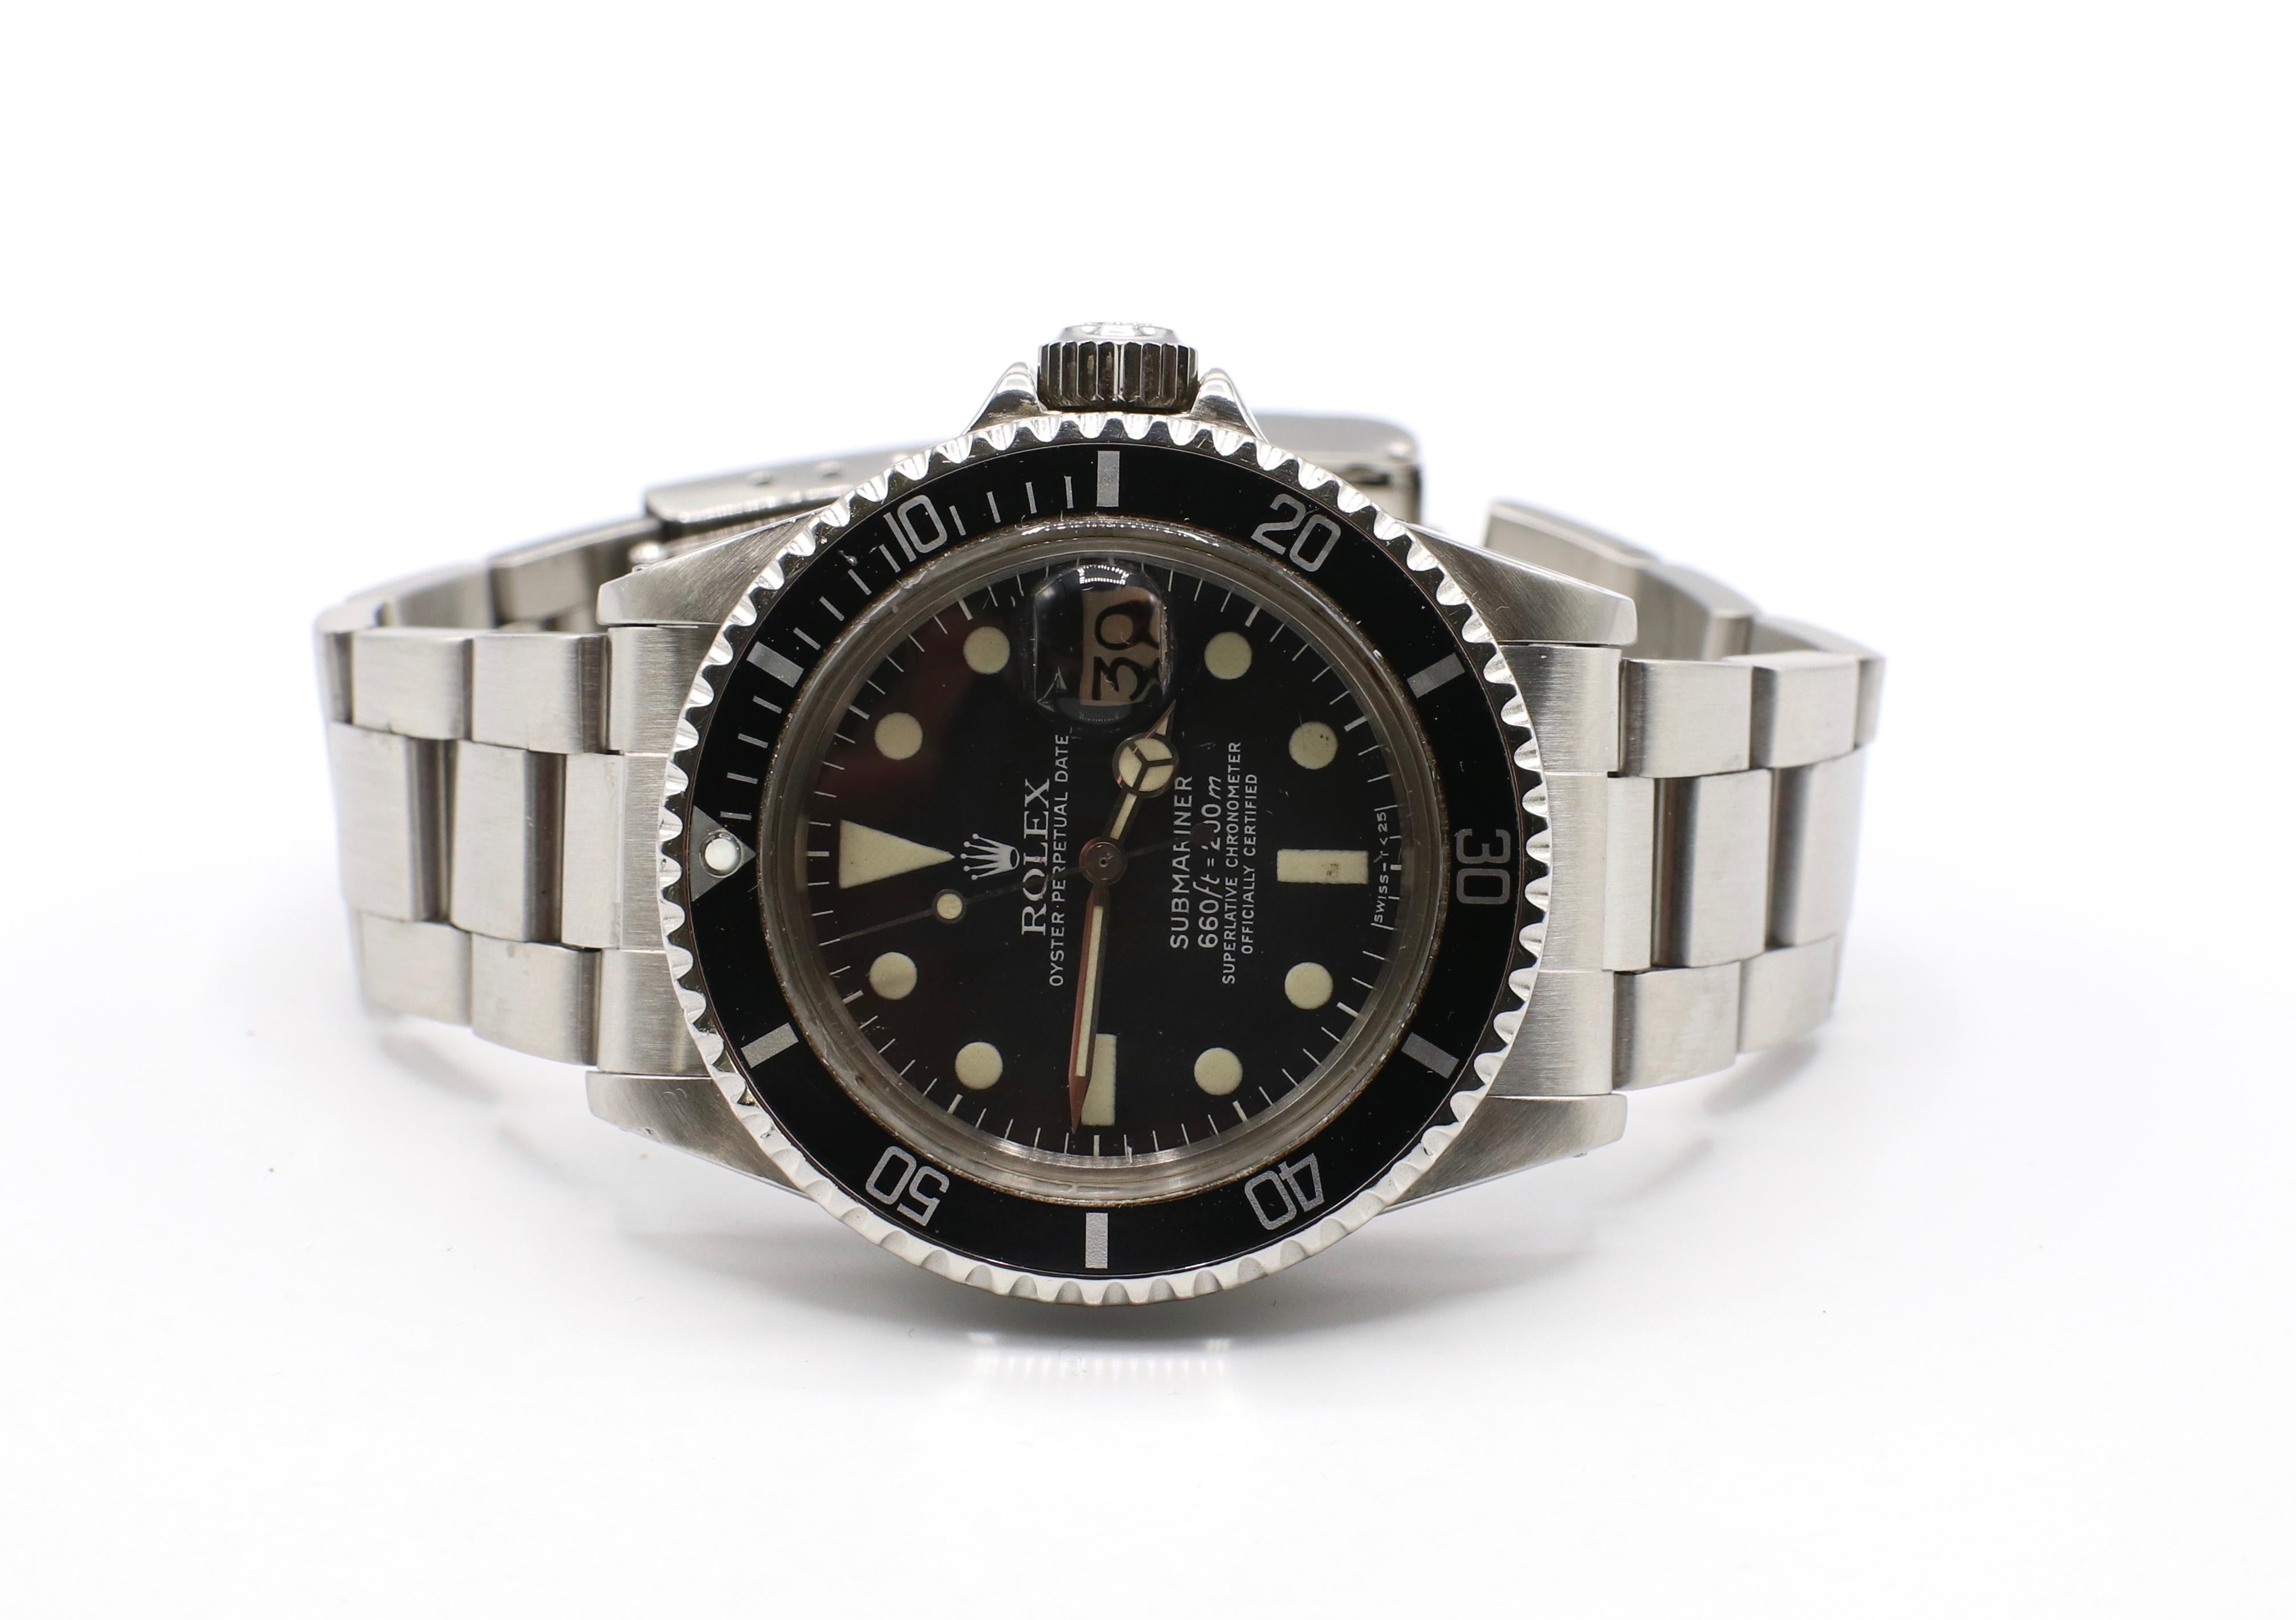 Vintage Rolex Submariner 1680 Stainless Steel Watch, circa 1979 6